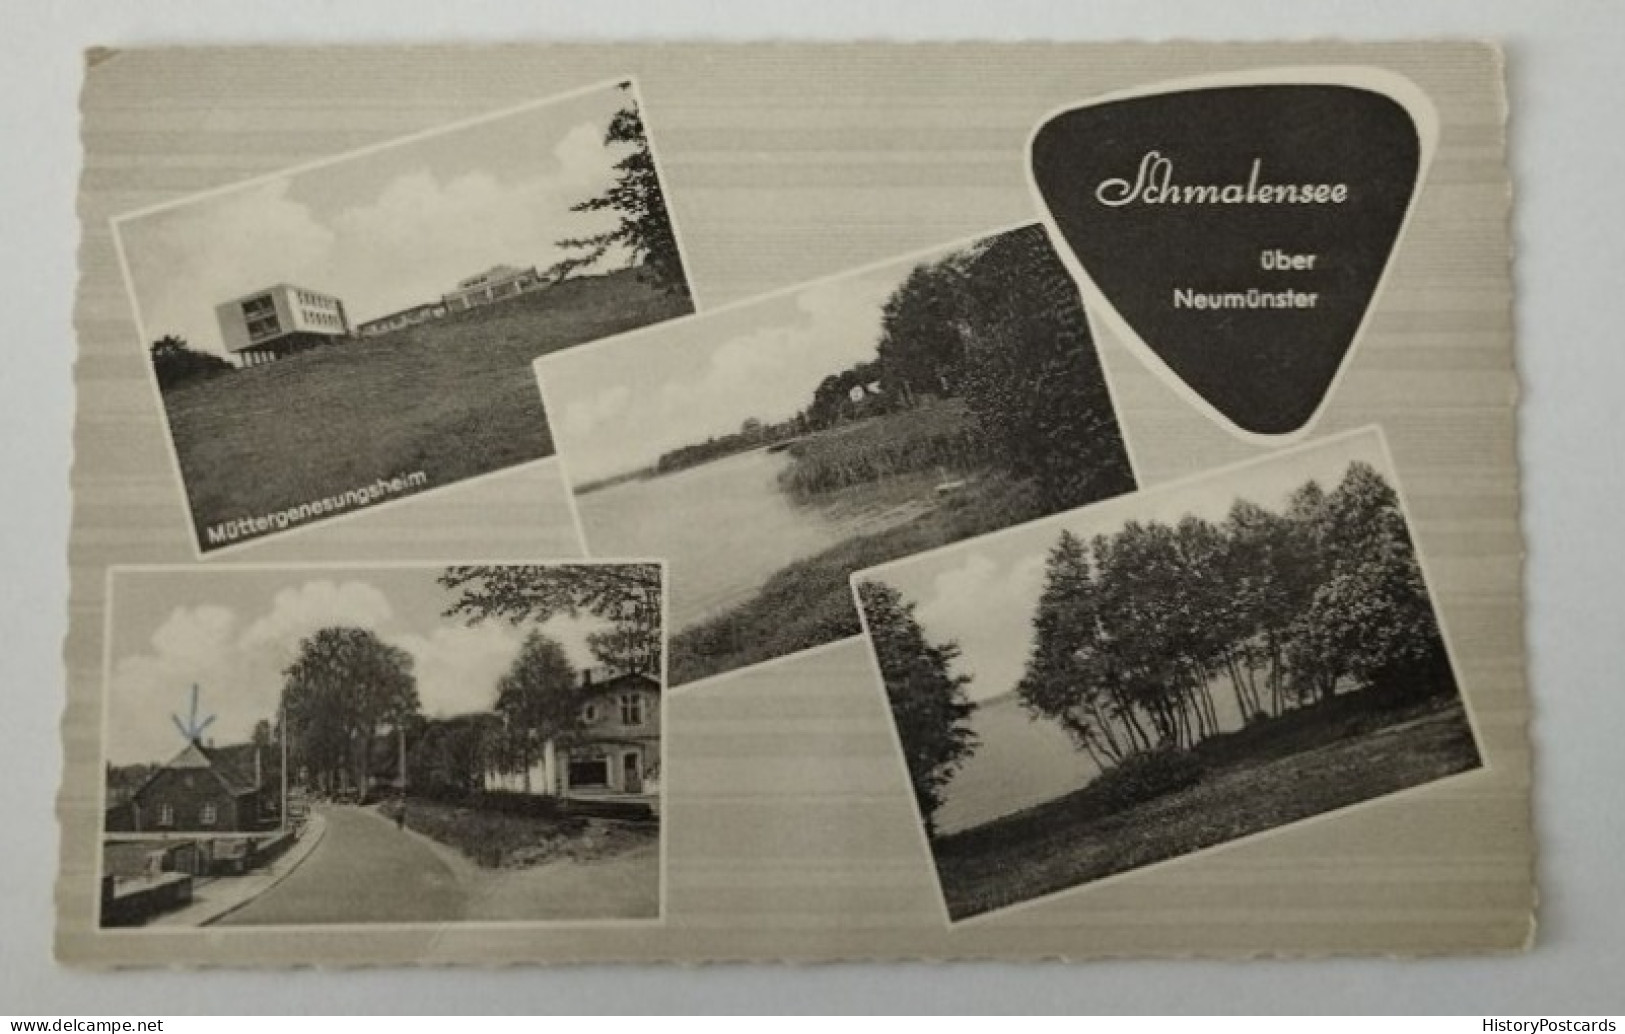 Schmalensee über Neumünster, 1969 - Neumuenster